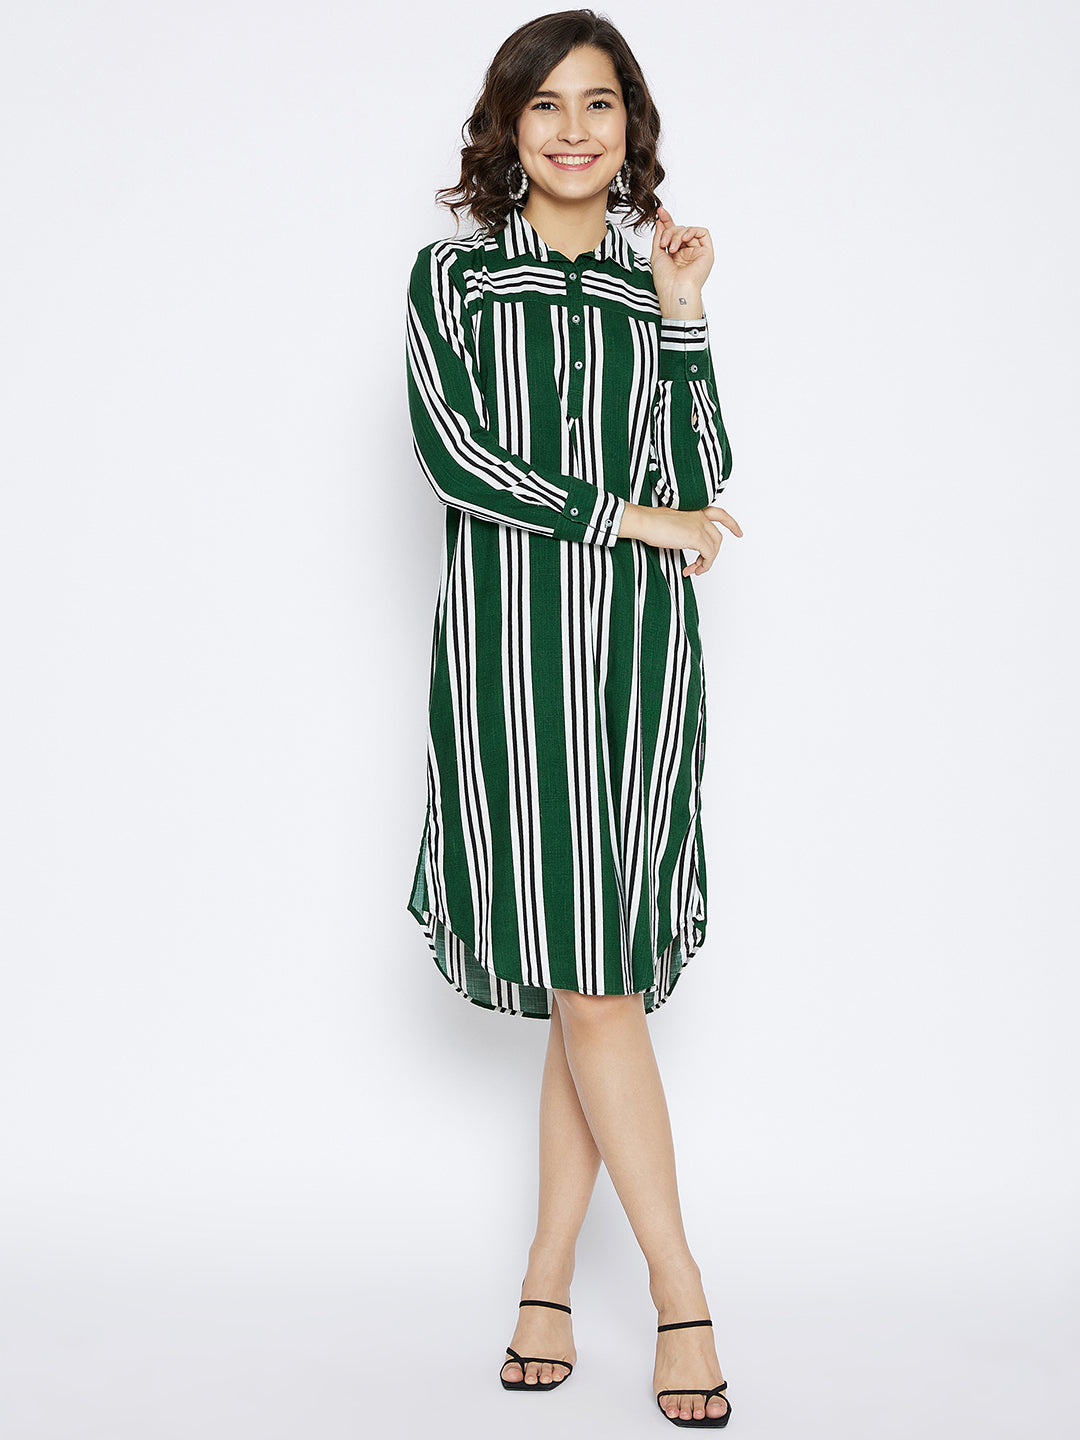 Green Striped shirt Dress - Women Dresses